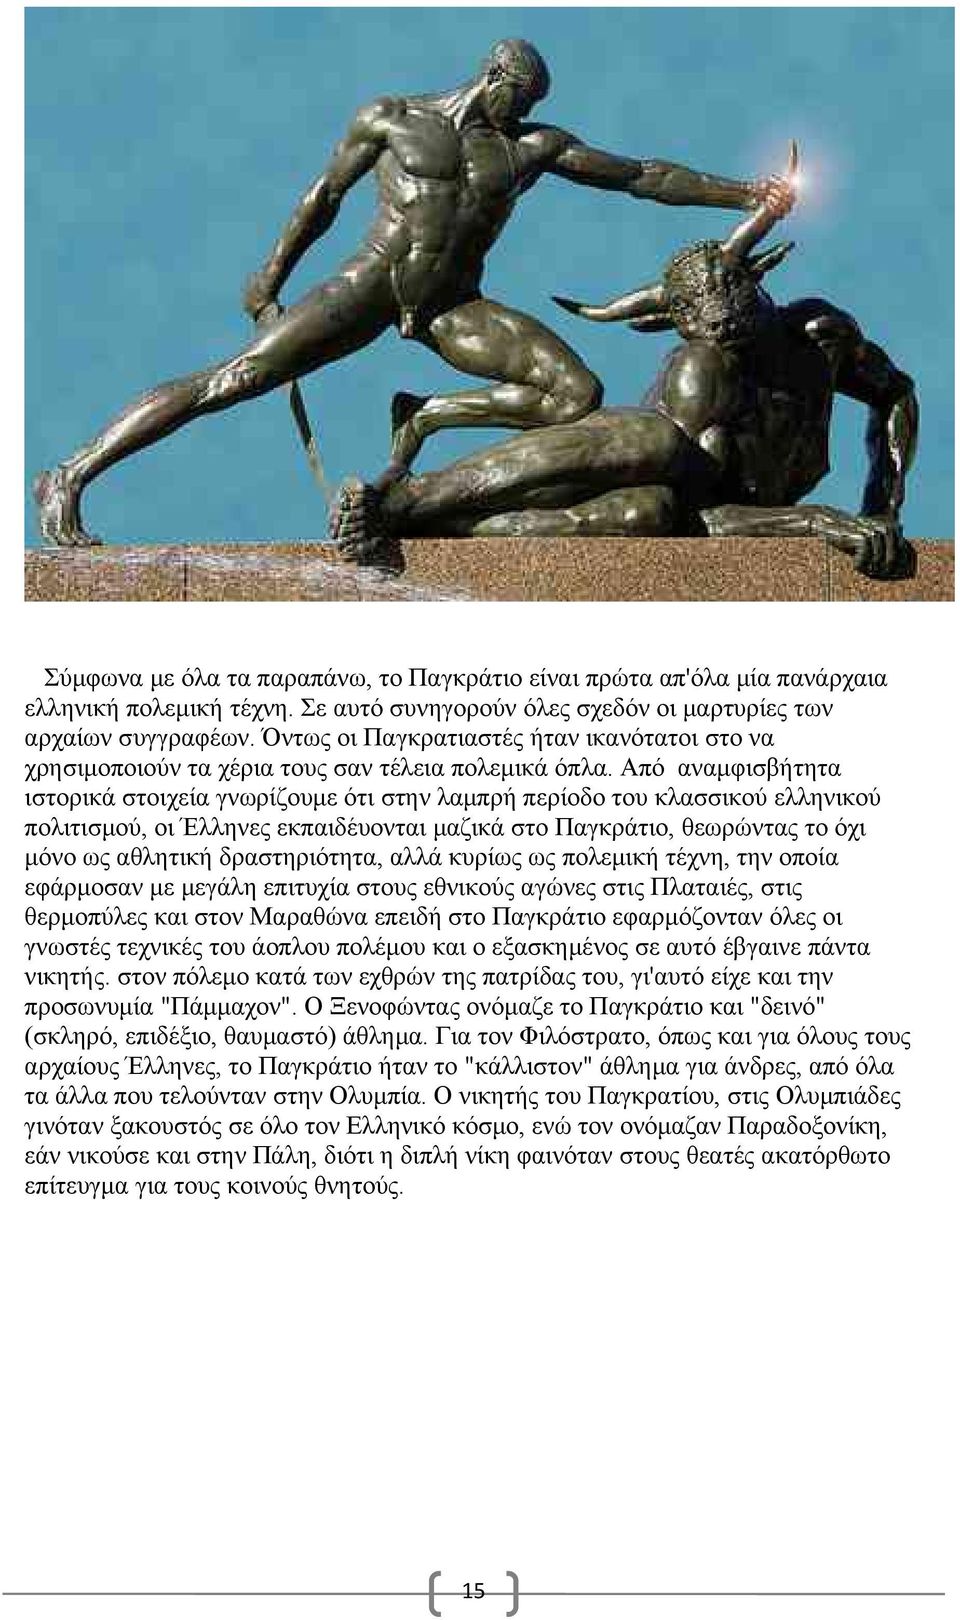 Από αναμφισβήτητα ιστορικά στοιχεία γνωρίζουμε ότι στην λαμπρή περίοδο του κλασσικού ελληνικού πολιτισμού, οι Έλληνες εκπαιδέυονται μαζικά στο Παγκράτιο, θεωρώντας το όχι μόνο ως αθλητική